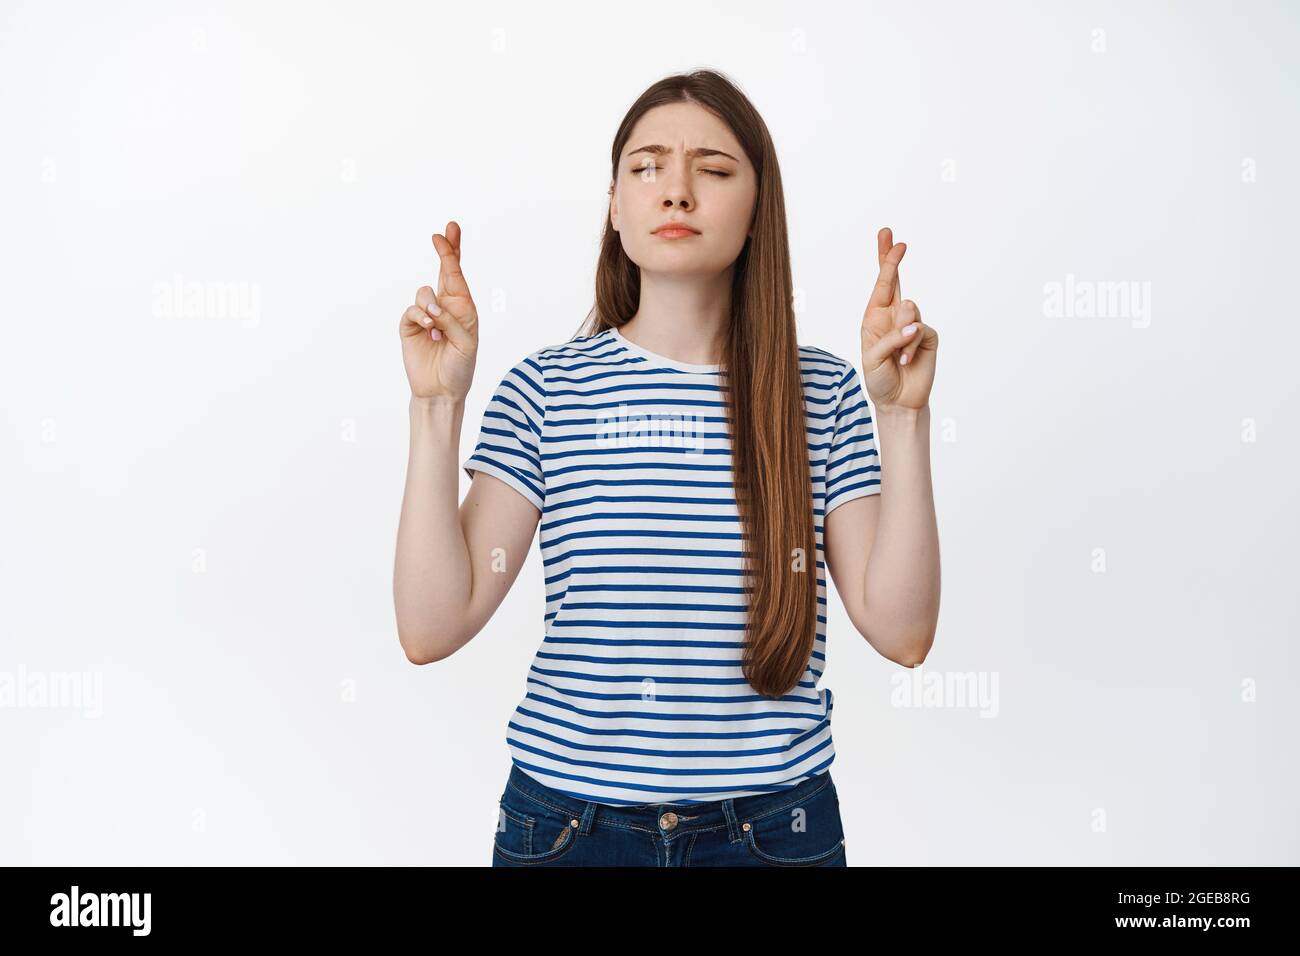 Hoffnungsvolle junge Frau kreuzt die Finger und bettelt, Wünsche machend, Nachrichten vorwegnehmend, weißer Hintergrund Stockfoto